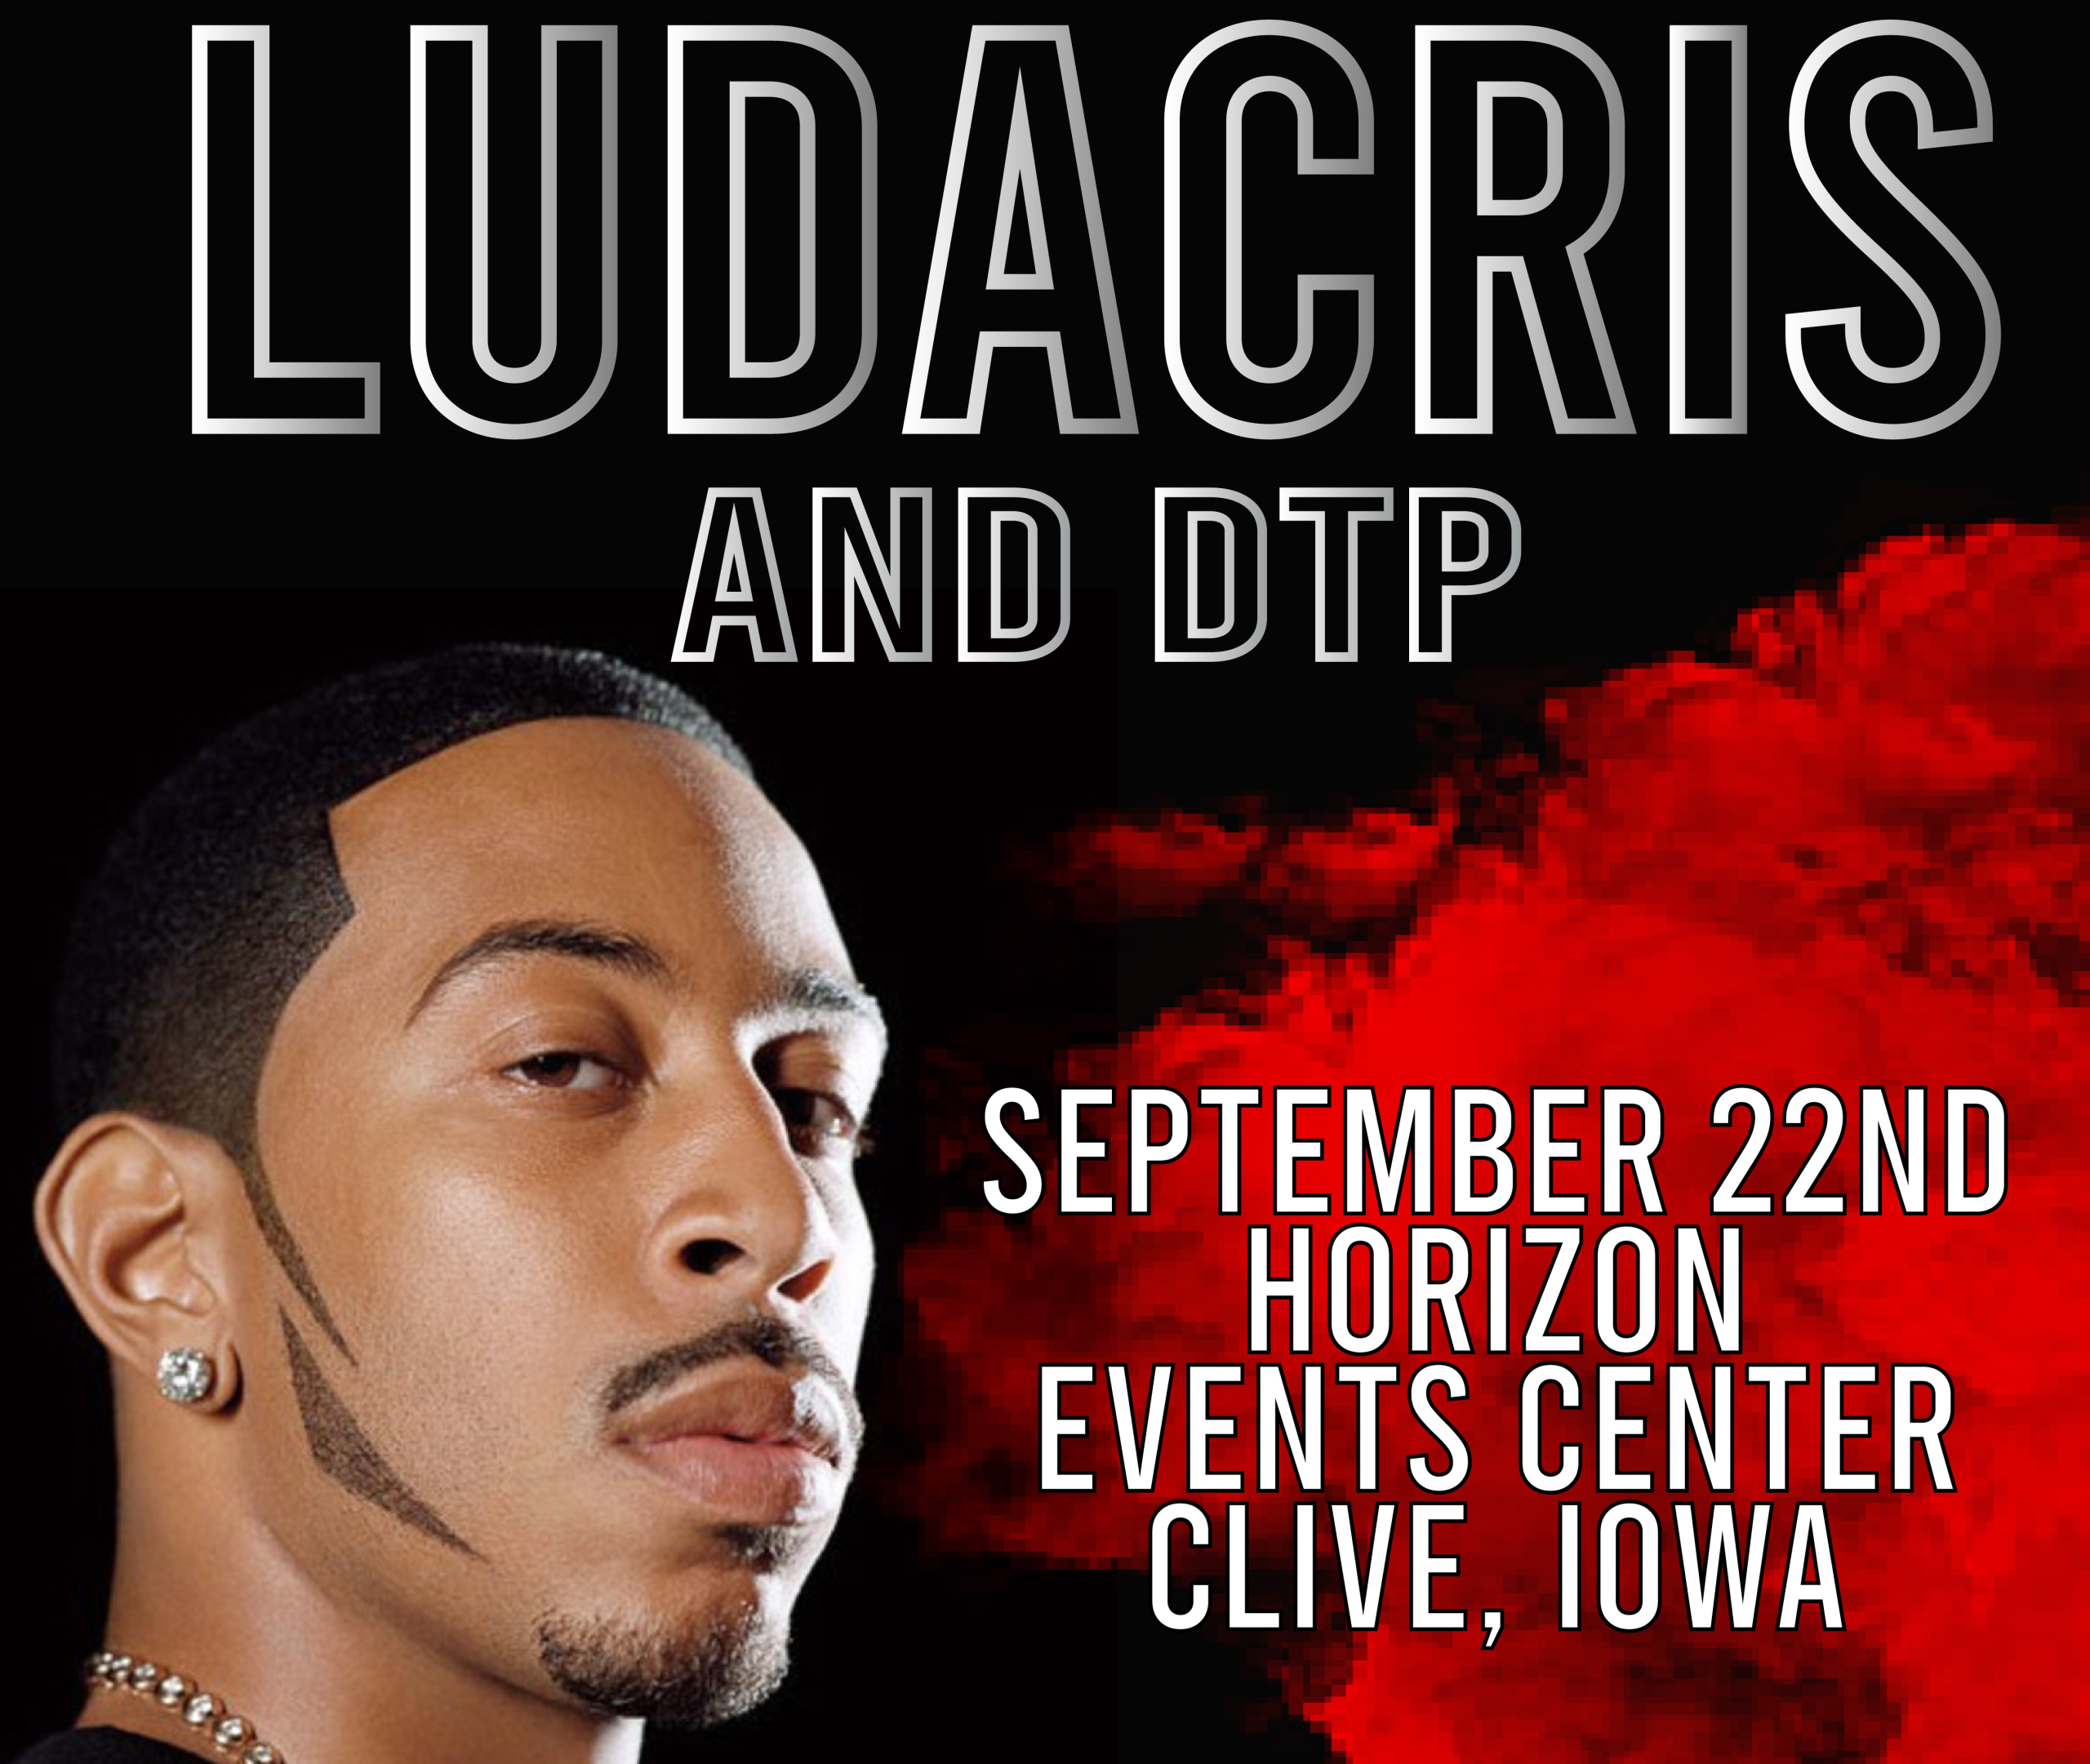 Ludacris & The DTP Tour Hit Clive